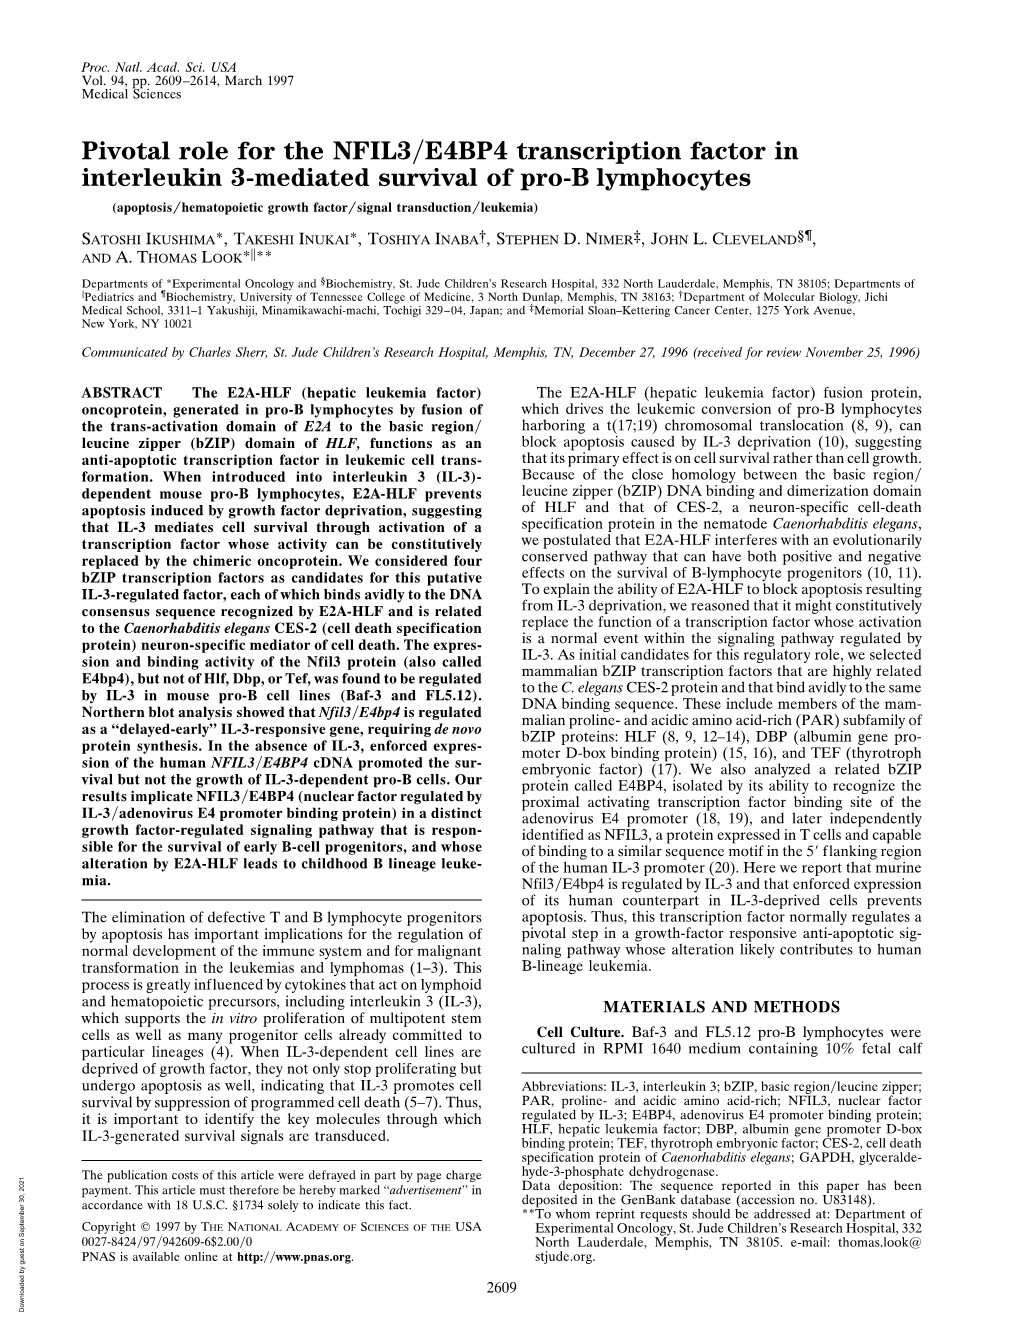 Pivotal Role for the NFIL3/E4BP4 Transcription Factor in Interleukin 3